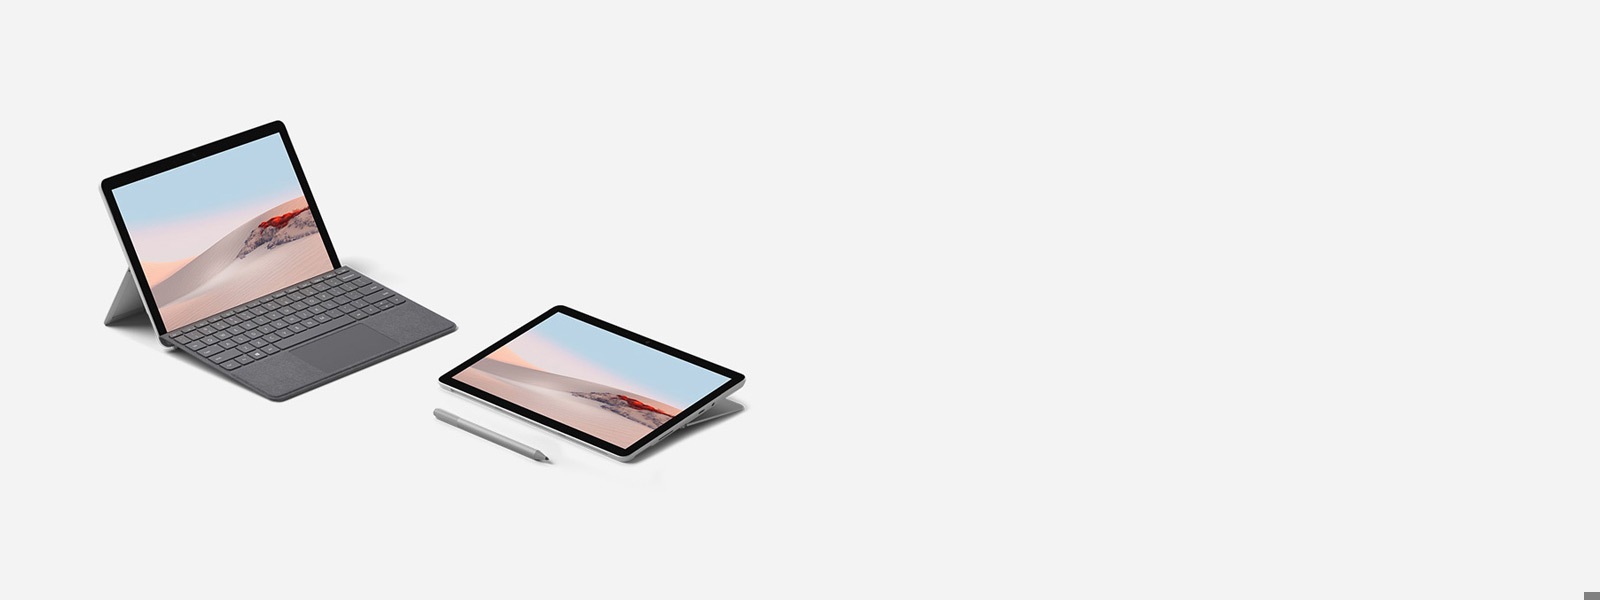 جهاز Surface Go 2 في وضع الكمبيوتر المحمول مع غطاء الكتابة Surface Go Signature Type Cover باللون البلاتيني وفي وضع استديو مع قلم Surface